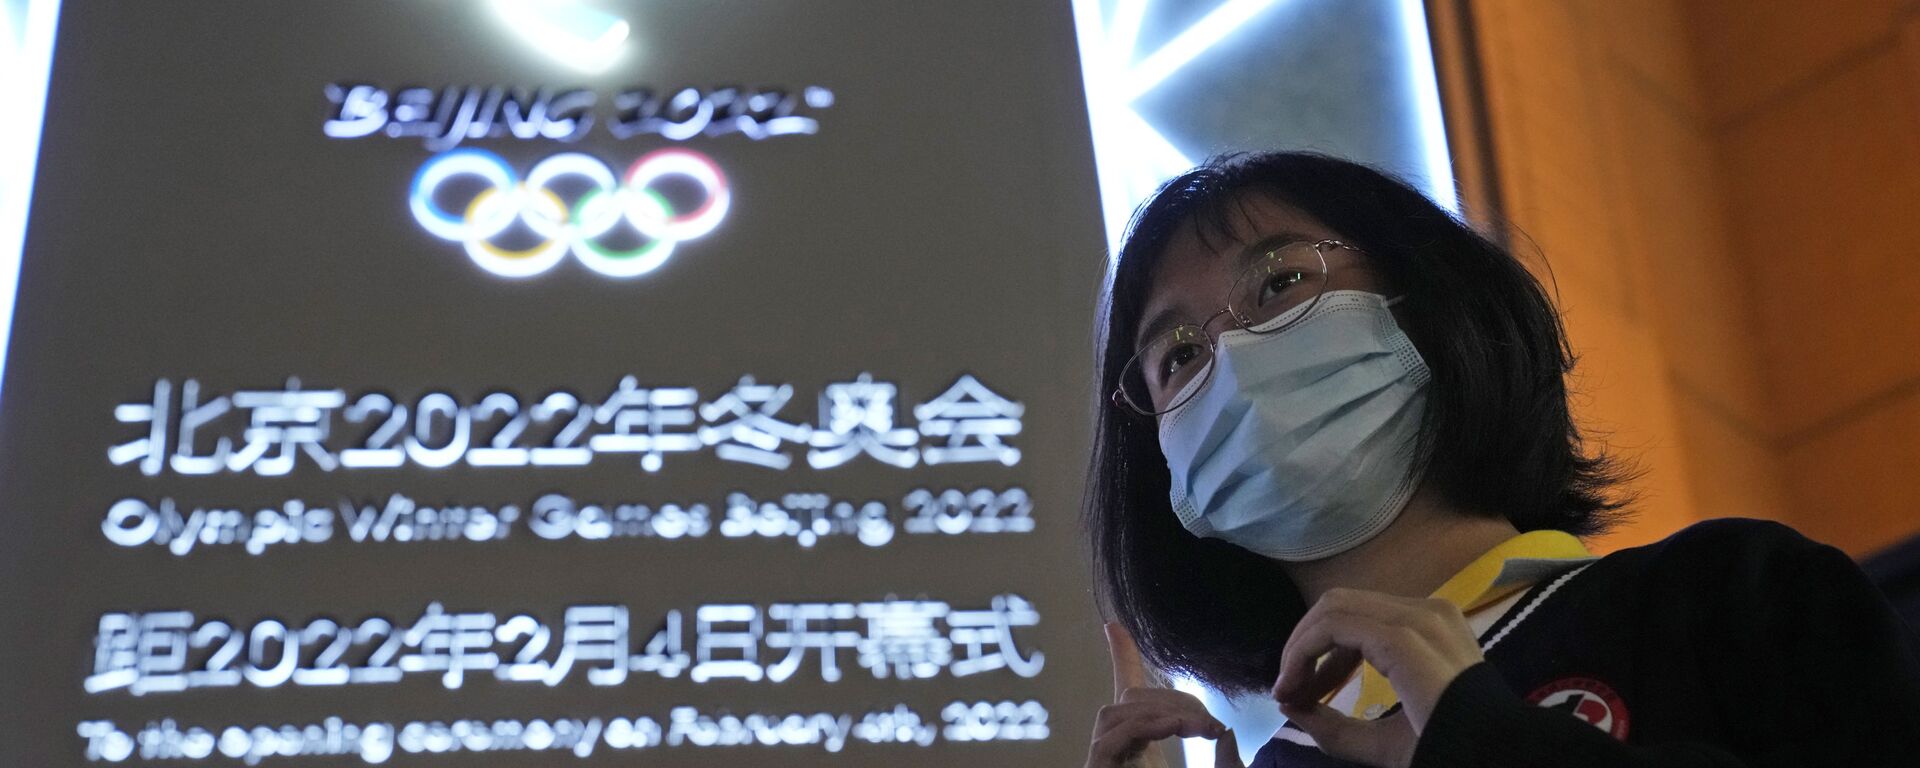 Отсчет времени до старта Олимпийских игр в Пекине  - Sputnik 日本, 1920, 11.01.2022